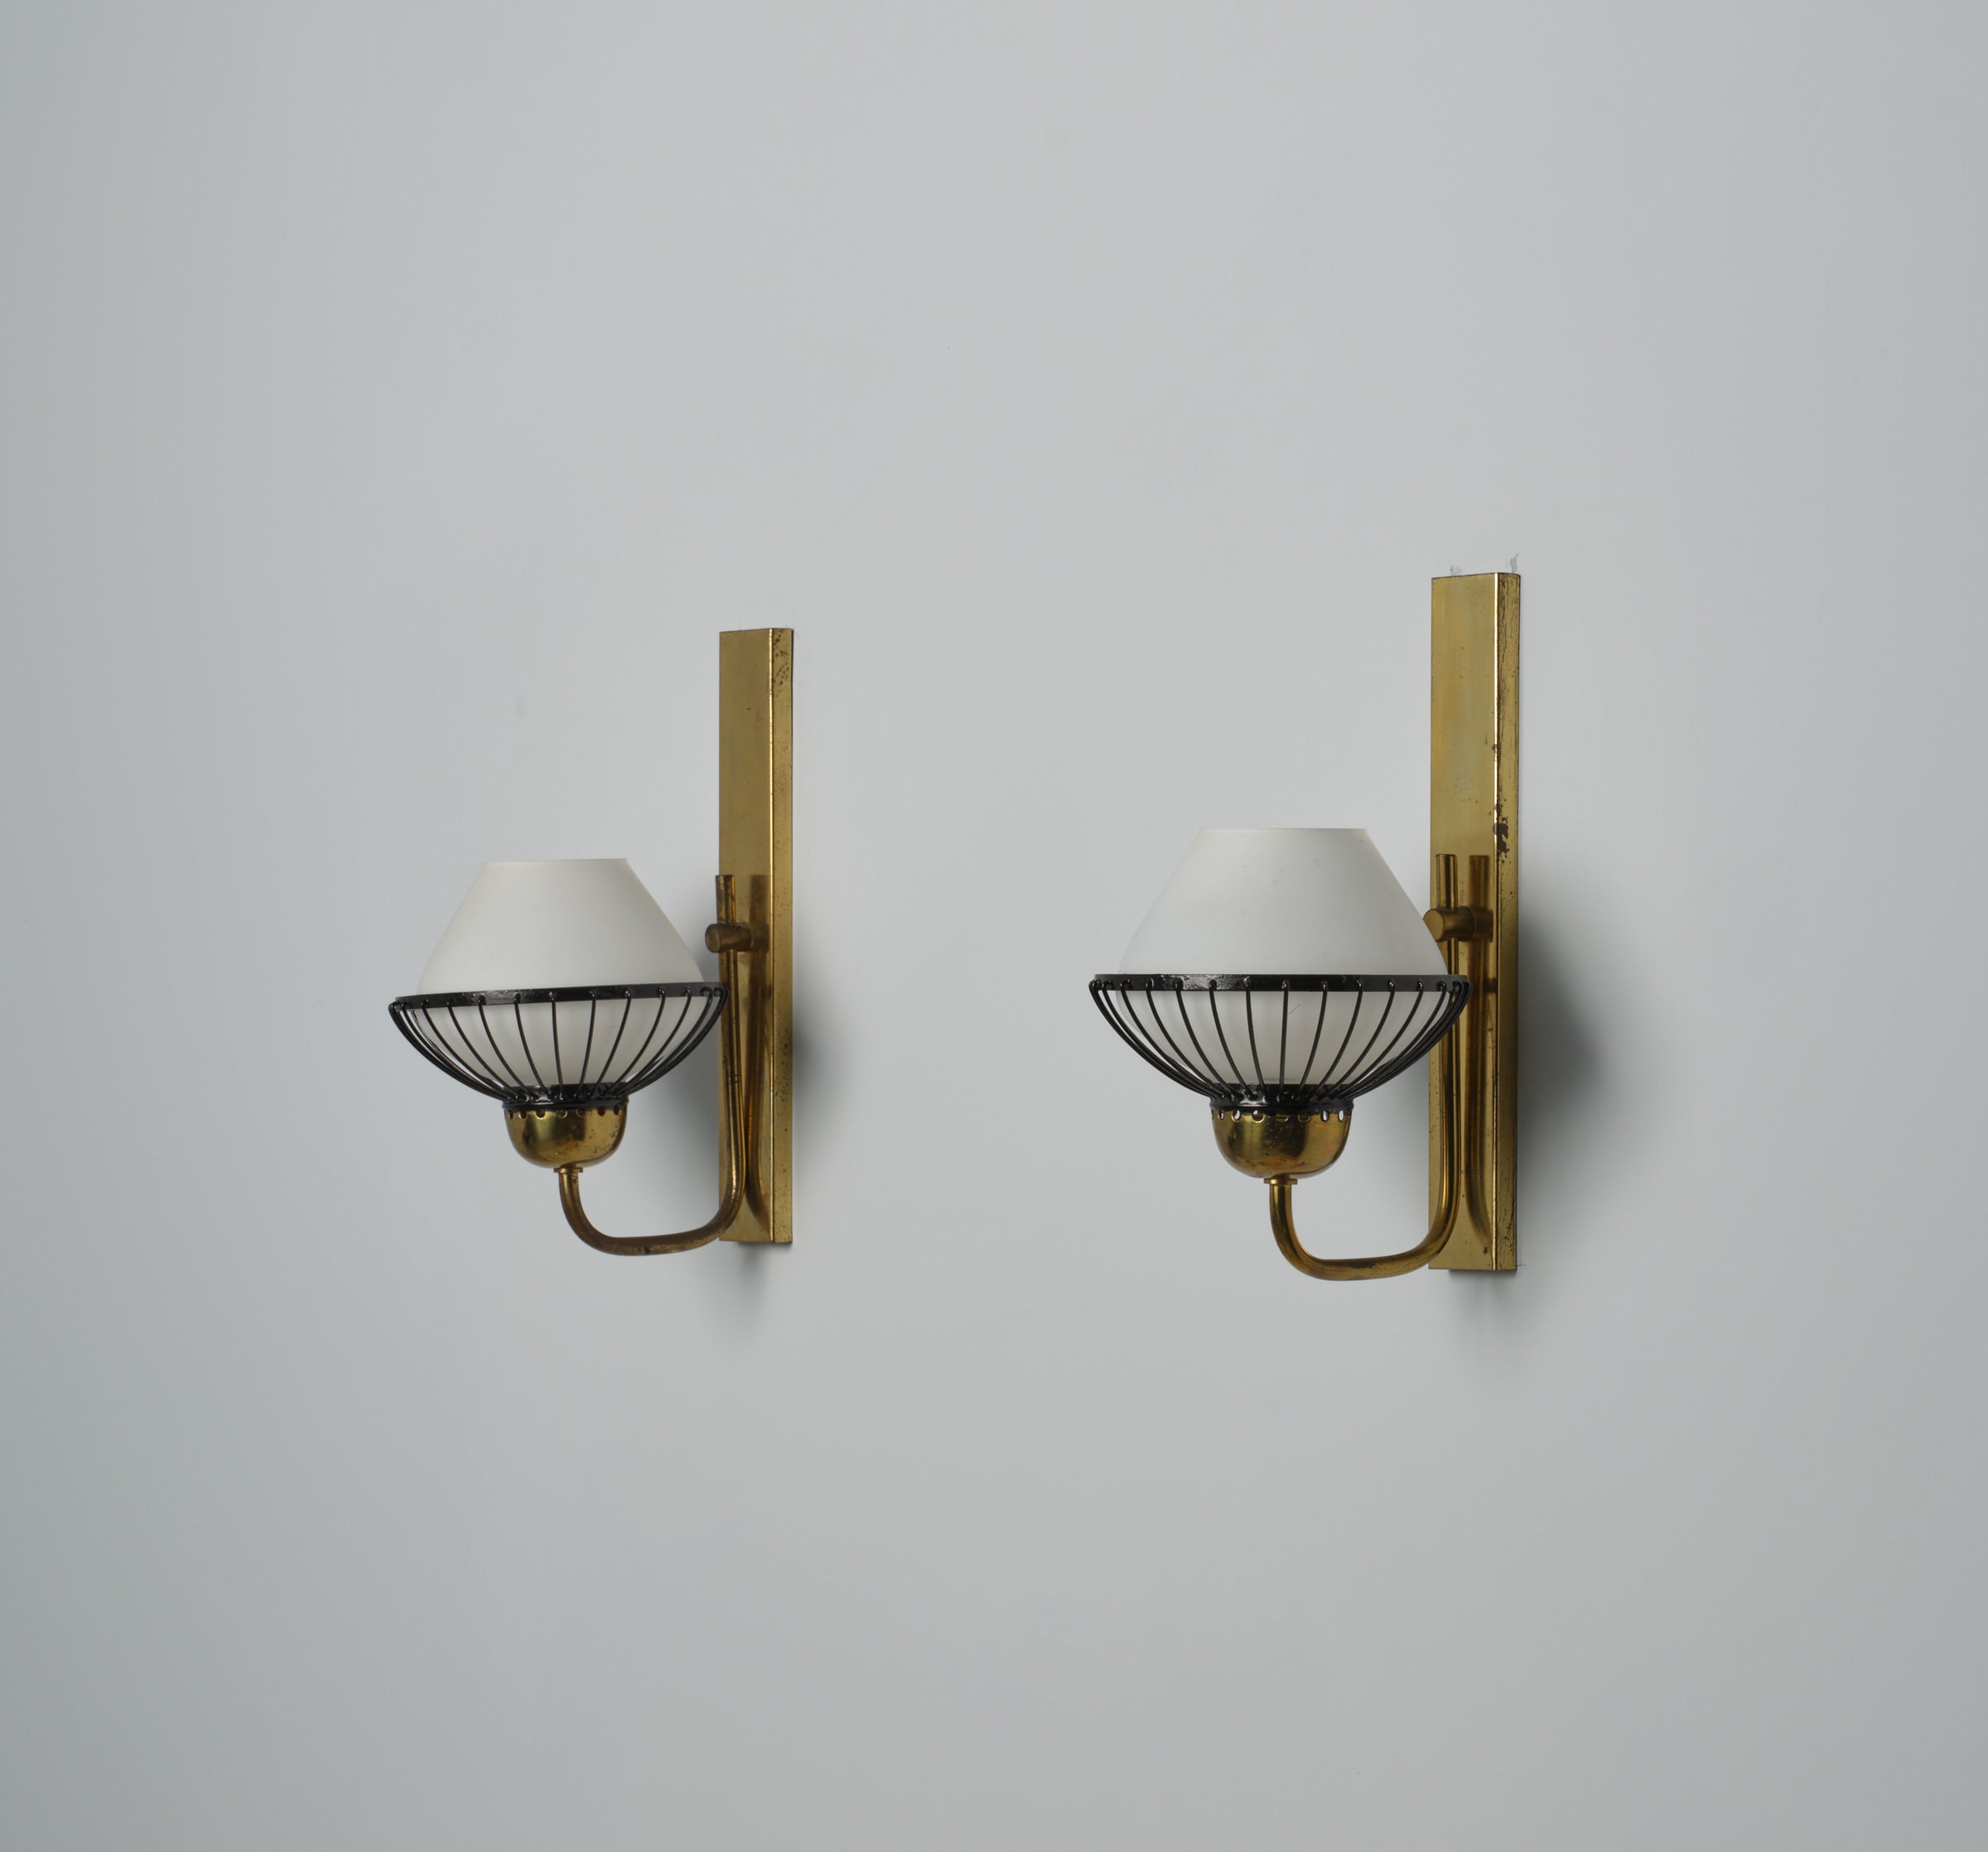 Zwei italienische Wandlampen aus der Mitte des Jahrhunderts, so genannte Appliques. Diese in den 1950er Jahren gefertigten Stücke strahlen Raffinesse und Raffinement aus. Jede Leuchte ist sorgfältig aus Messing gefertigt, mit Akzenten aus schwarzem